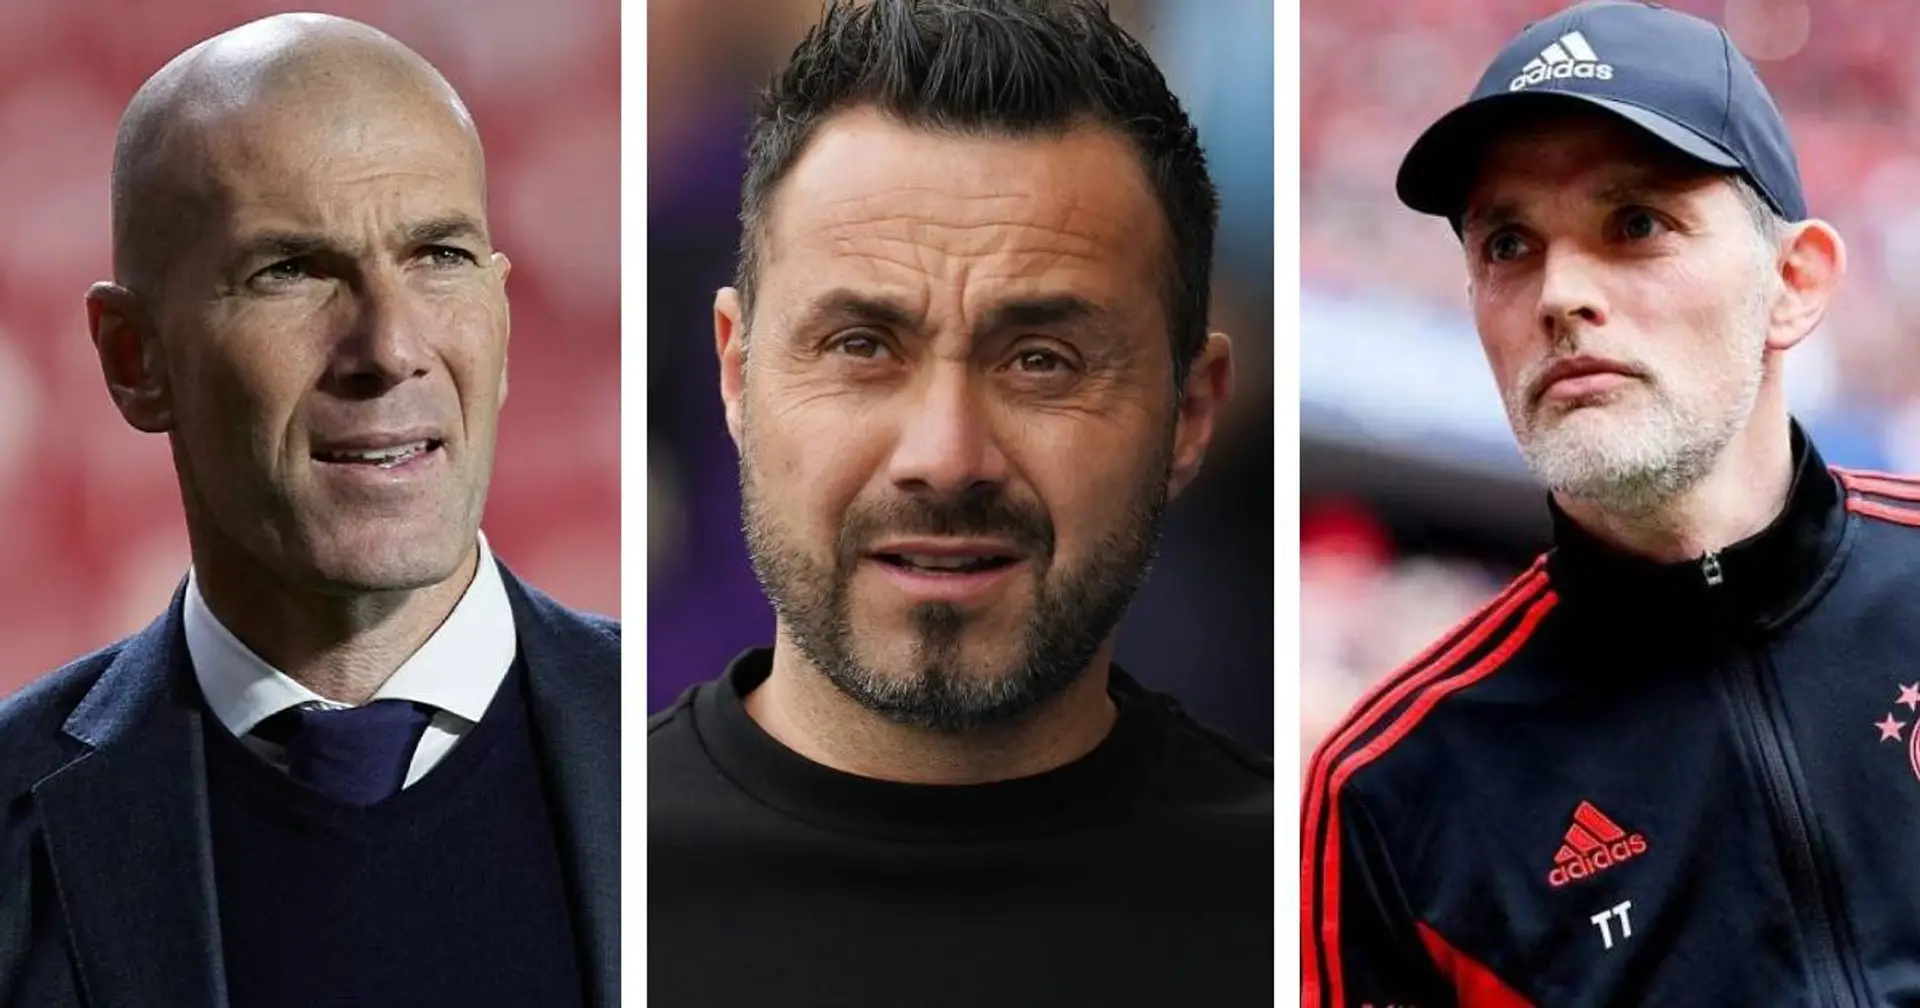 ❓ DISKUSSIONSTHEMA: Wer soll der neue Bayern-Trainer werden, nachdem Nagelsmann abgesagt hat?